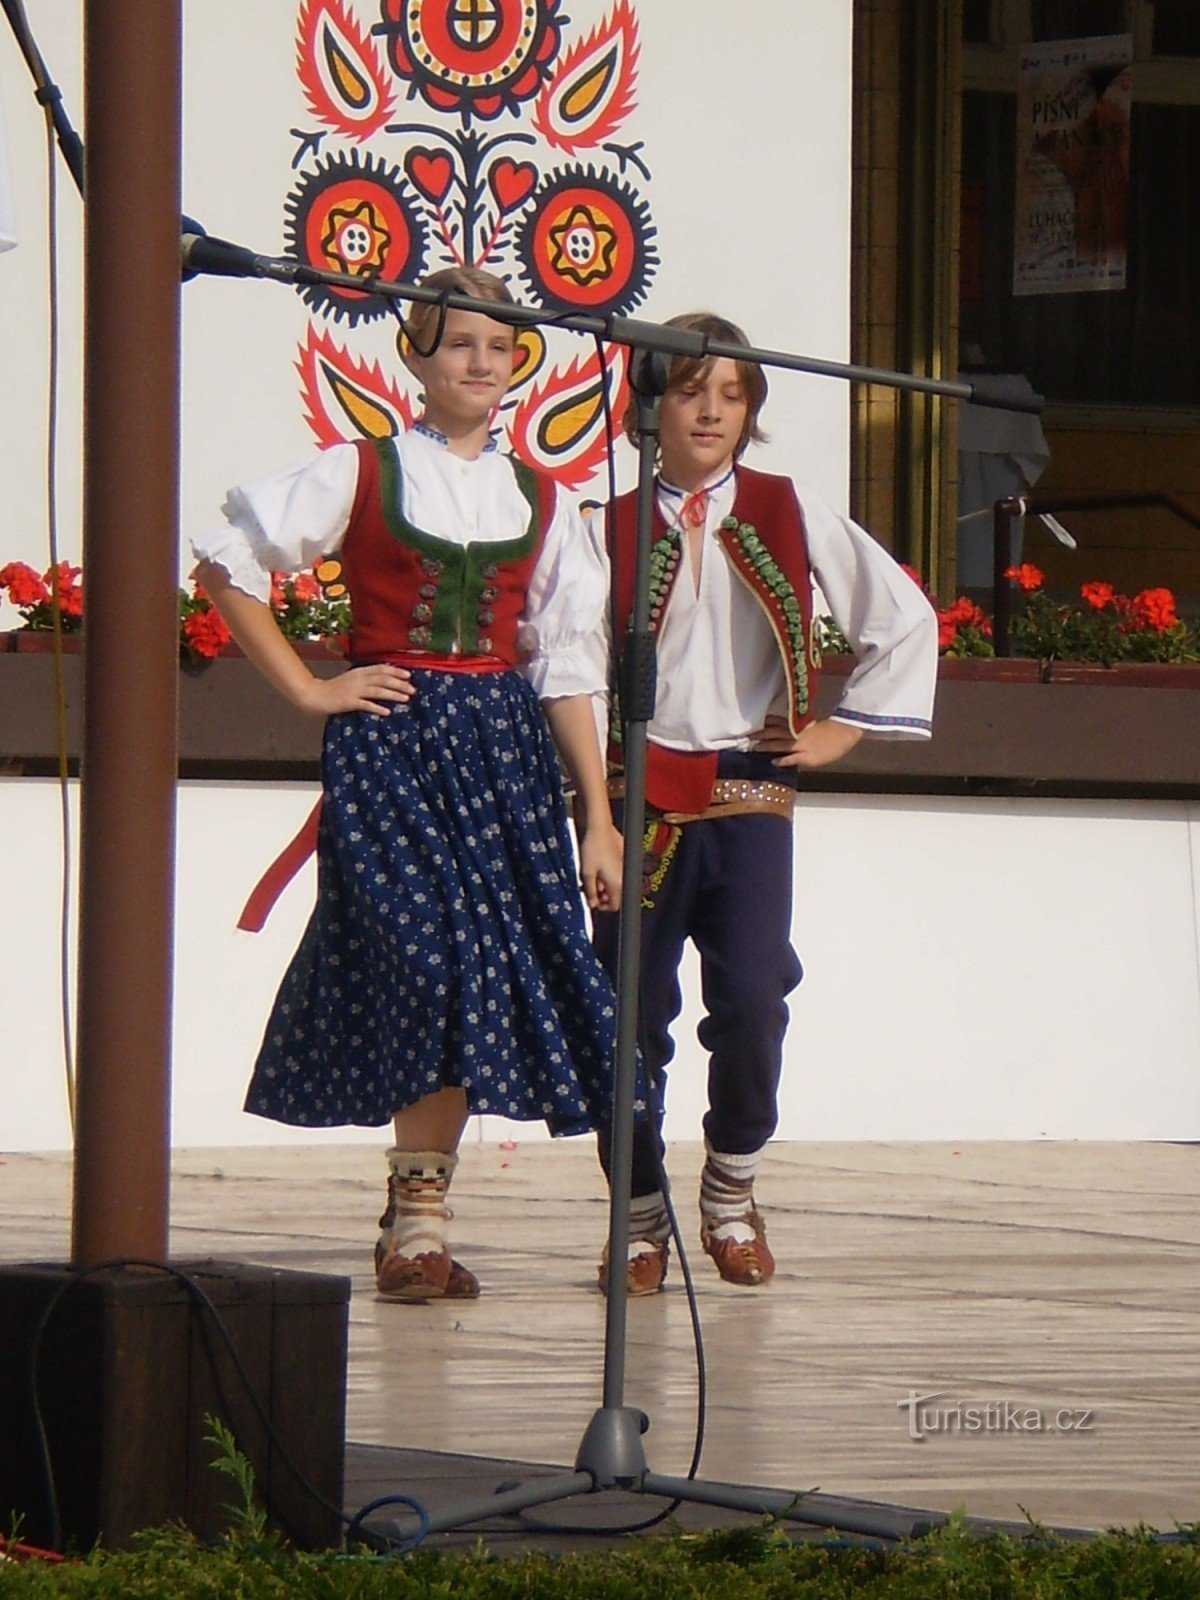 Luhačovice - Festival for børns folklore-ensembler Sang og dans